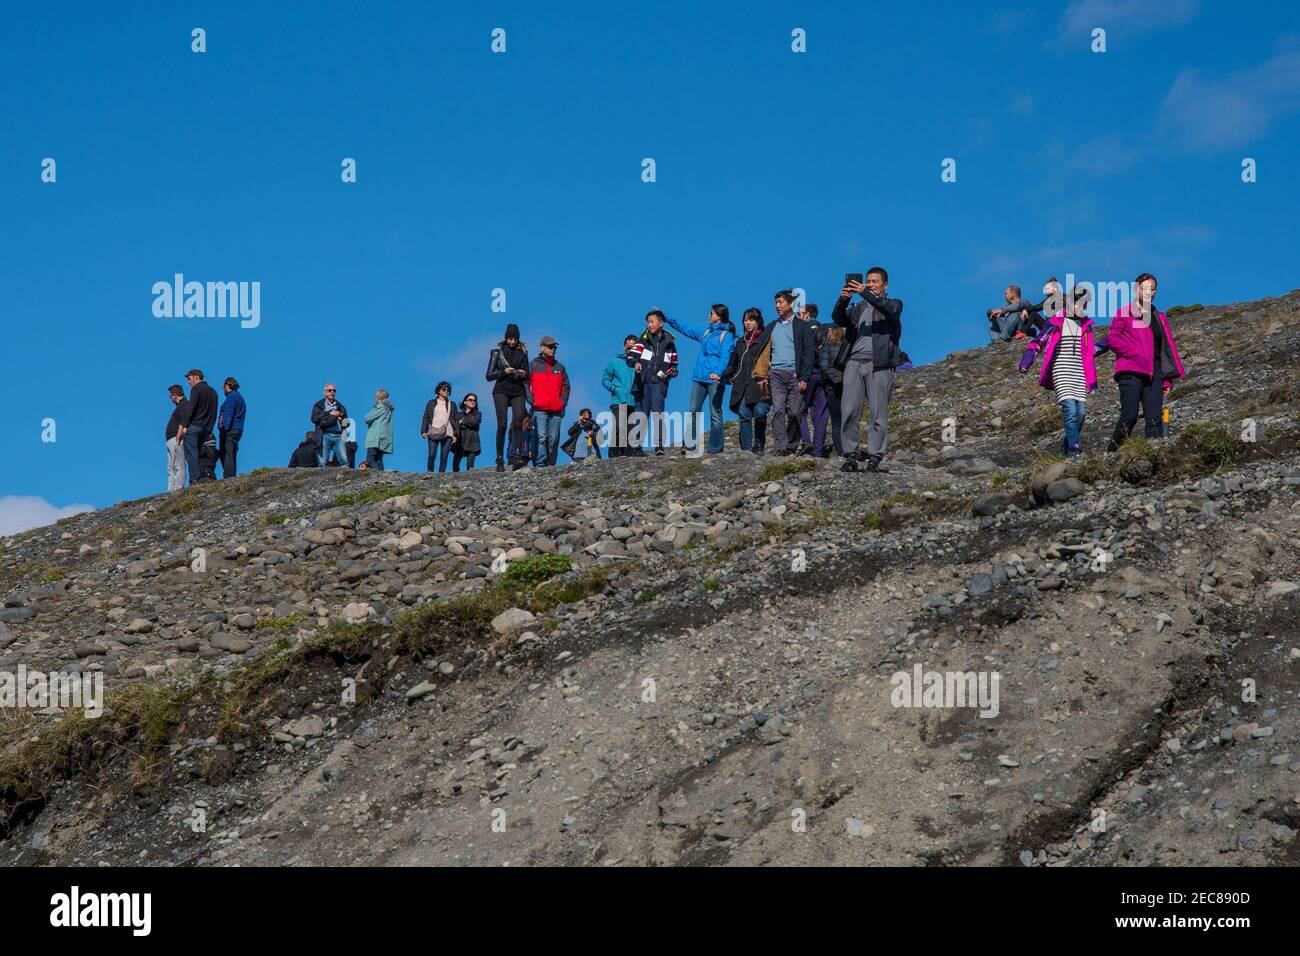 Jokulsarlon Iceland - August 18. 2018: Tourists visiting the Jokulsarlon Glacier Lagoon in Iceland Stock Photo